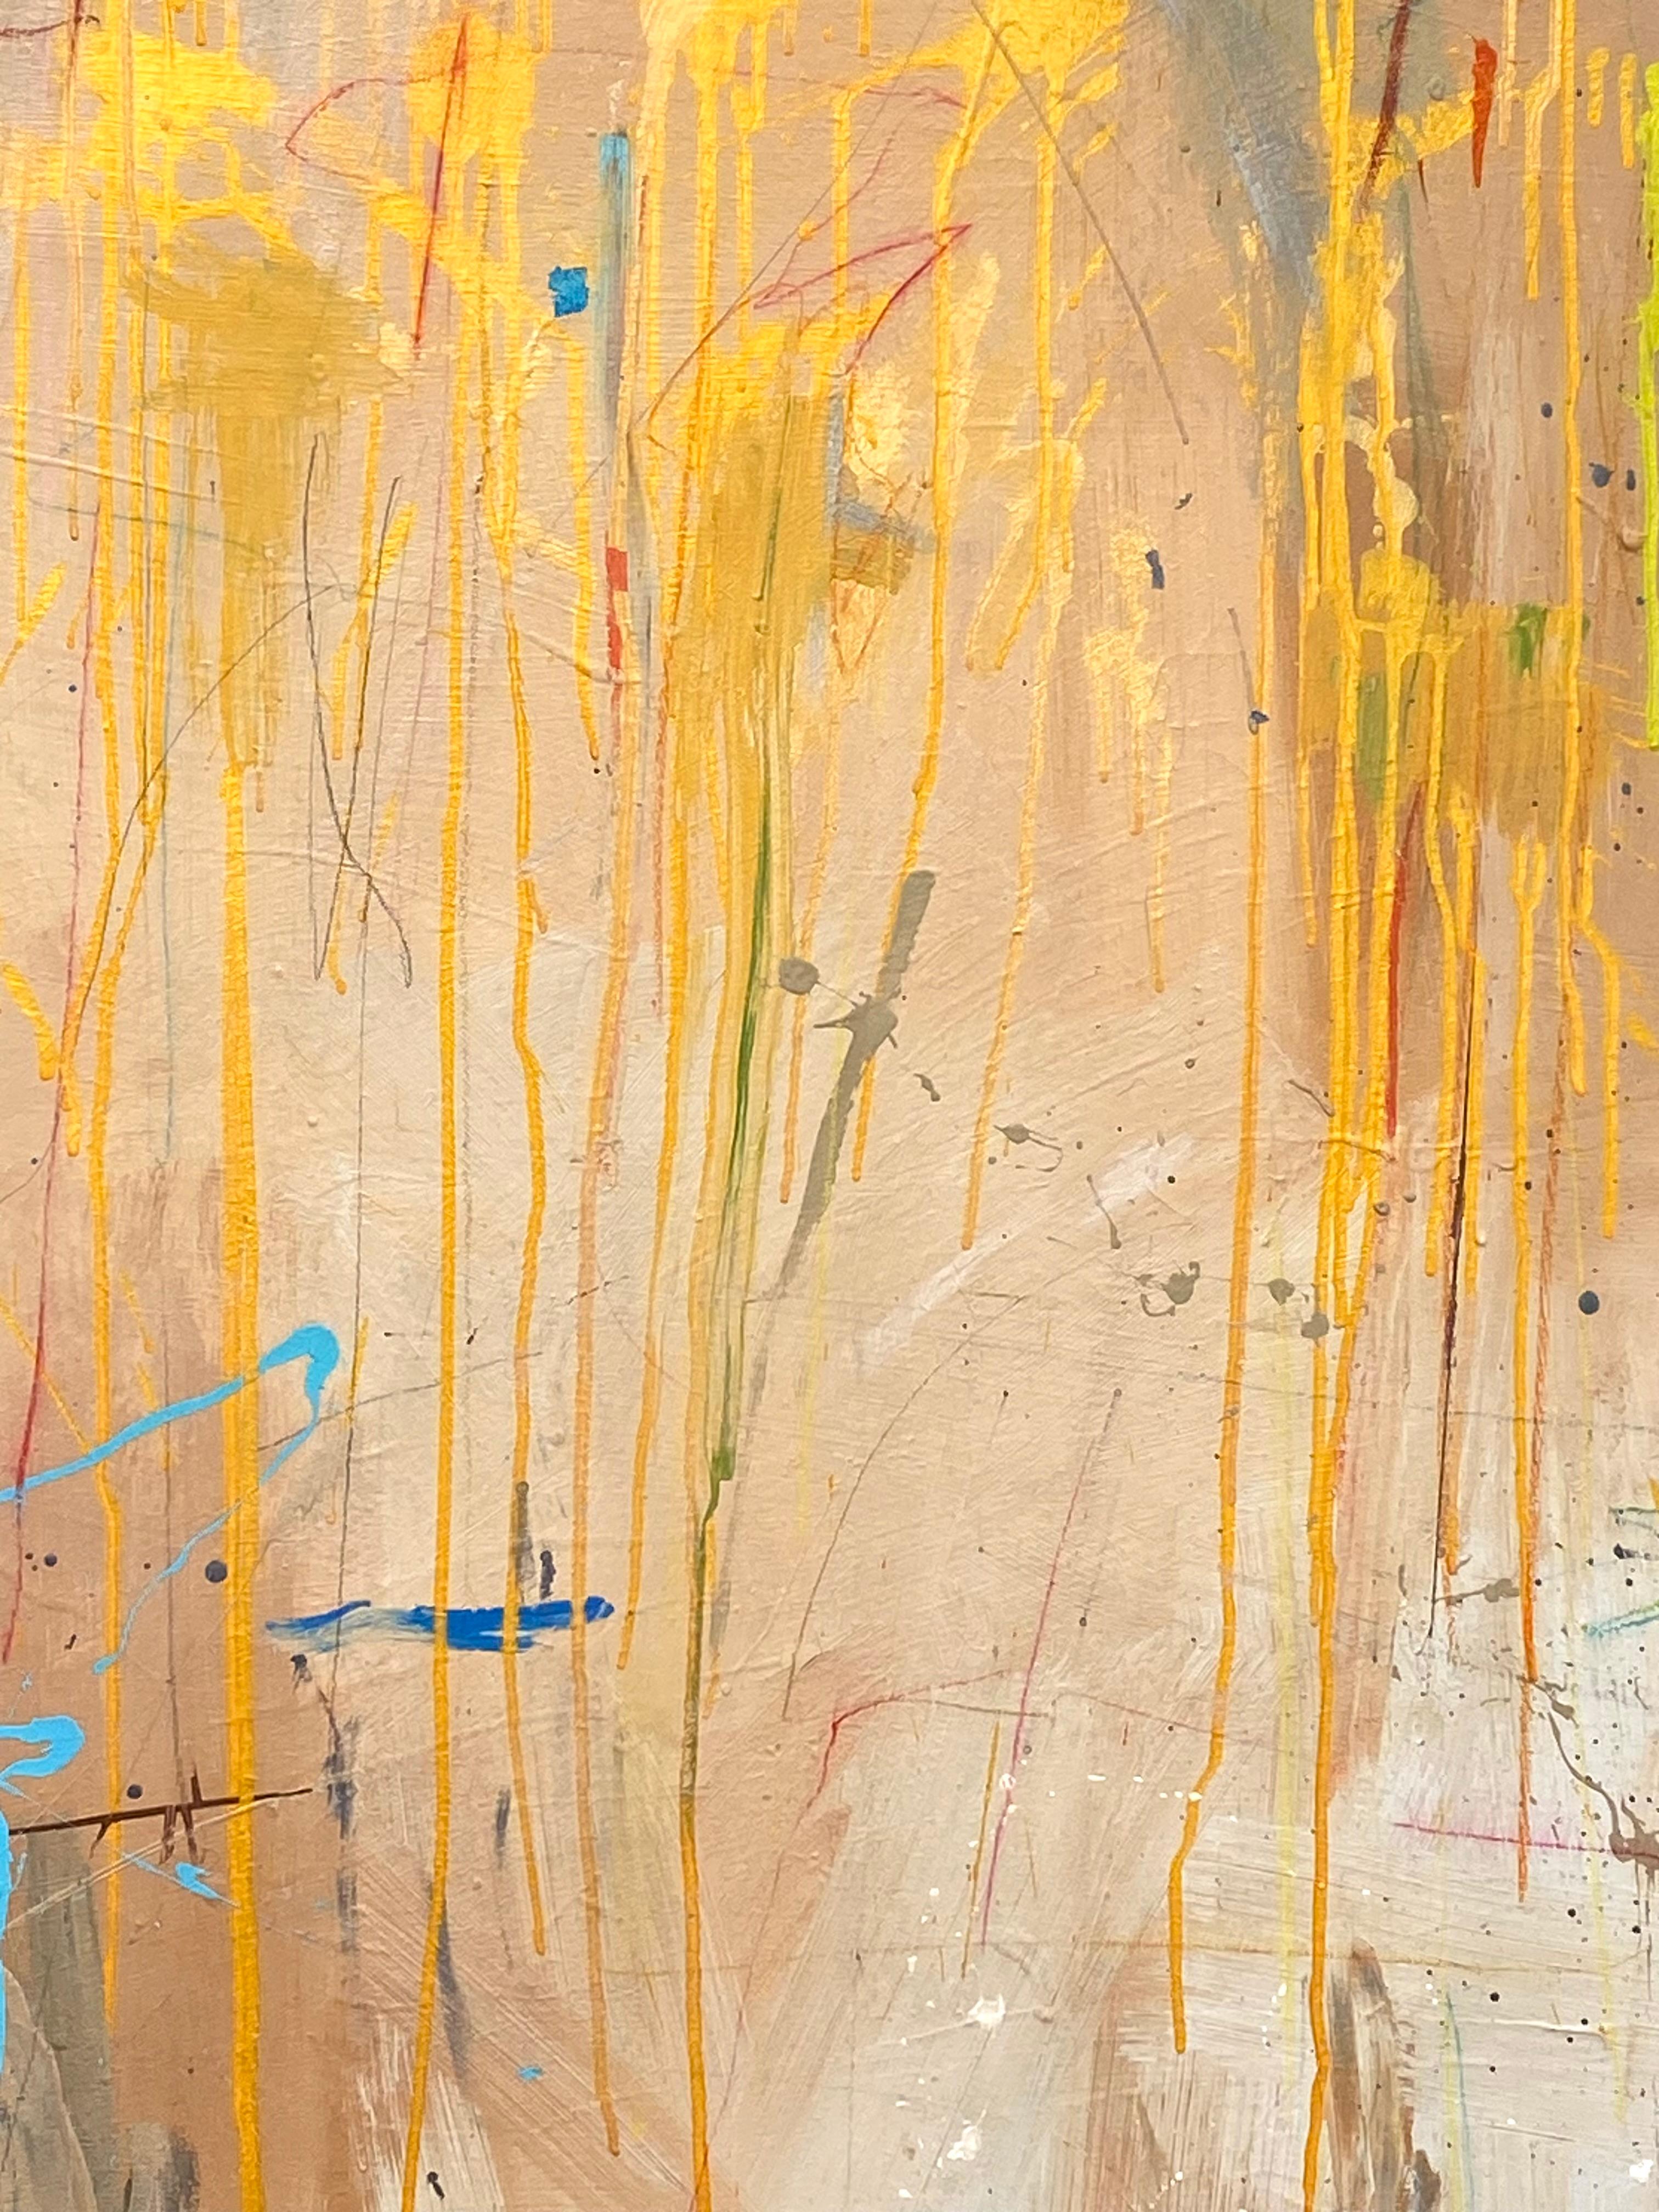 Originalgemälde in Mischtechnik des amerikanischen Künstlers Joseph Conrad-Ferm.  Bestehend aus Ölfarbe, Acrylfarbe und Ölpastell auf Leinwand.  Signiert unten rechts.  Verso betitelt und datiert, 2014.  Der Zustand ist ausgezeichnet. Gerahmt mit